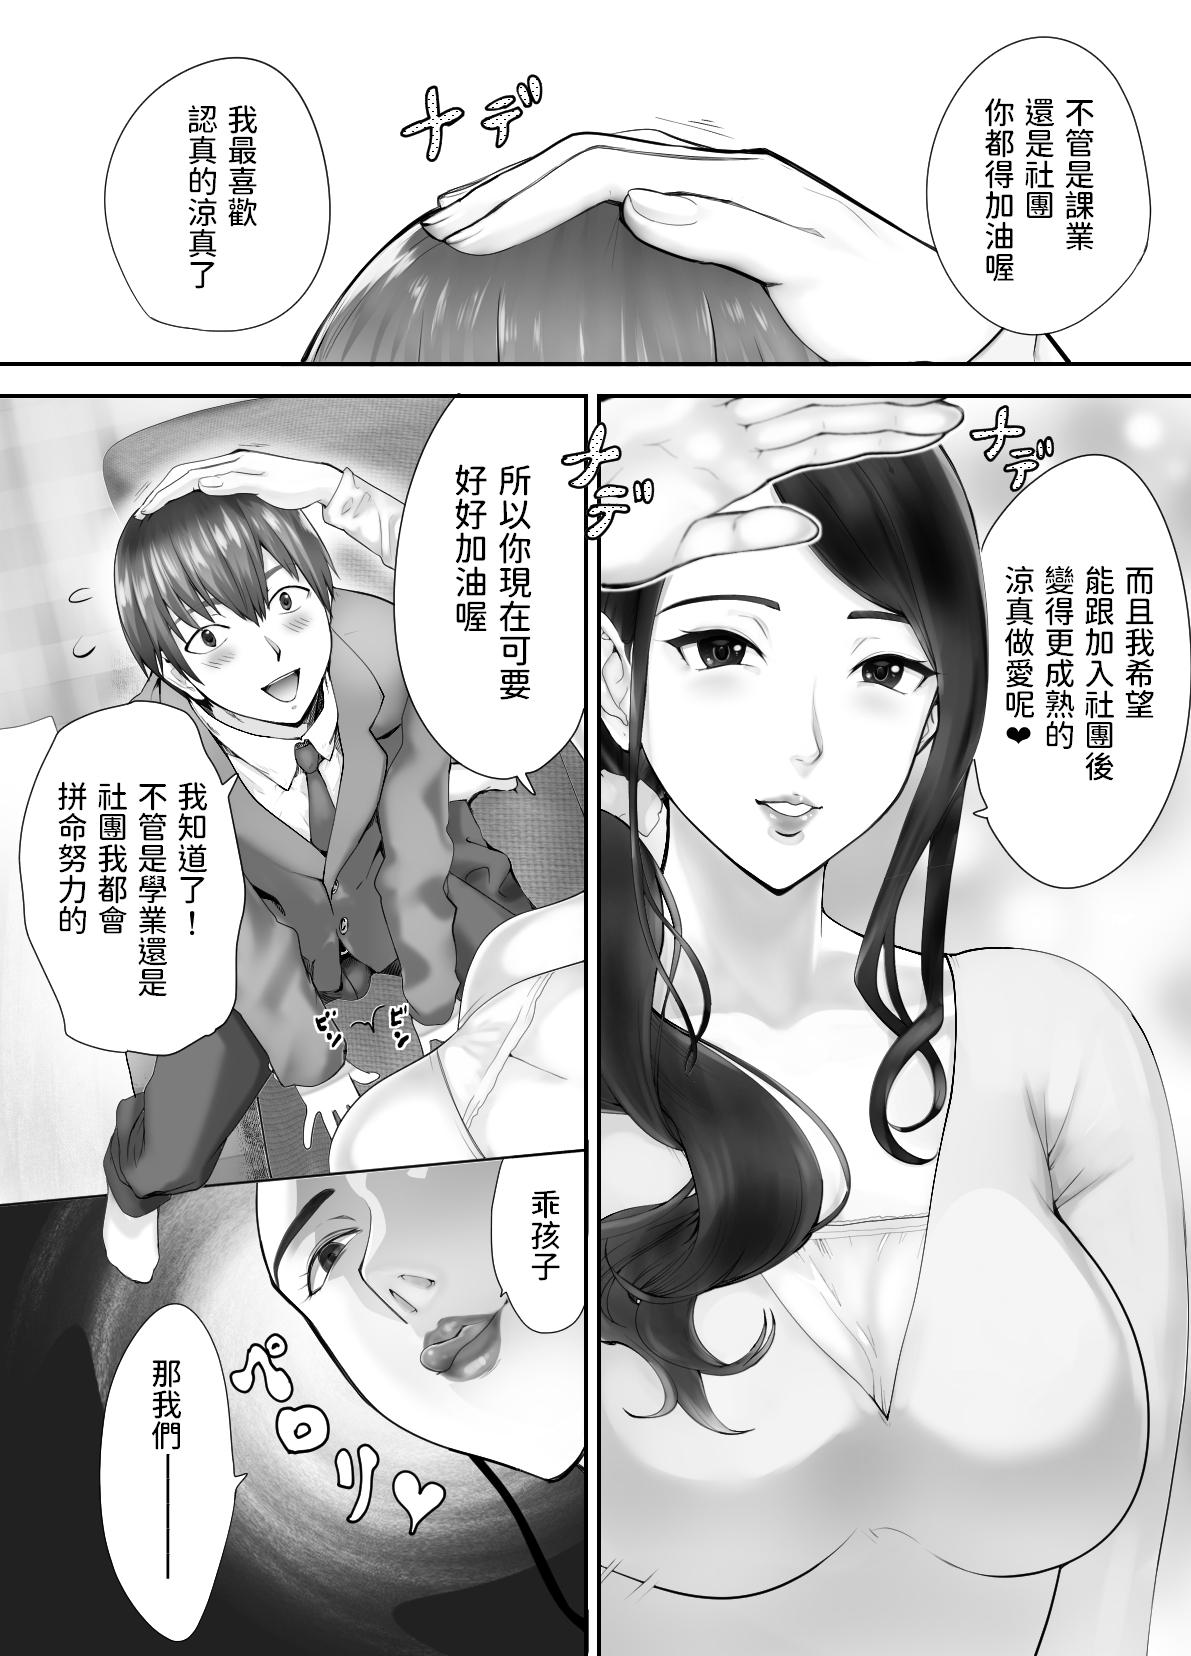 Culo Osananajimi ga Mama to Yatte Imasu. 3 - Original De Quatro - Page 10